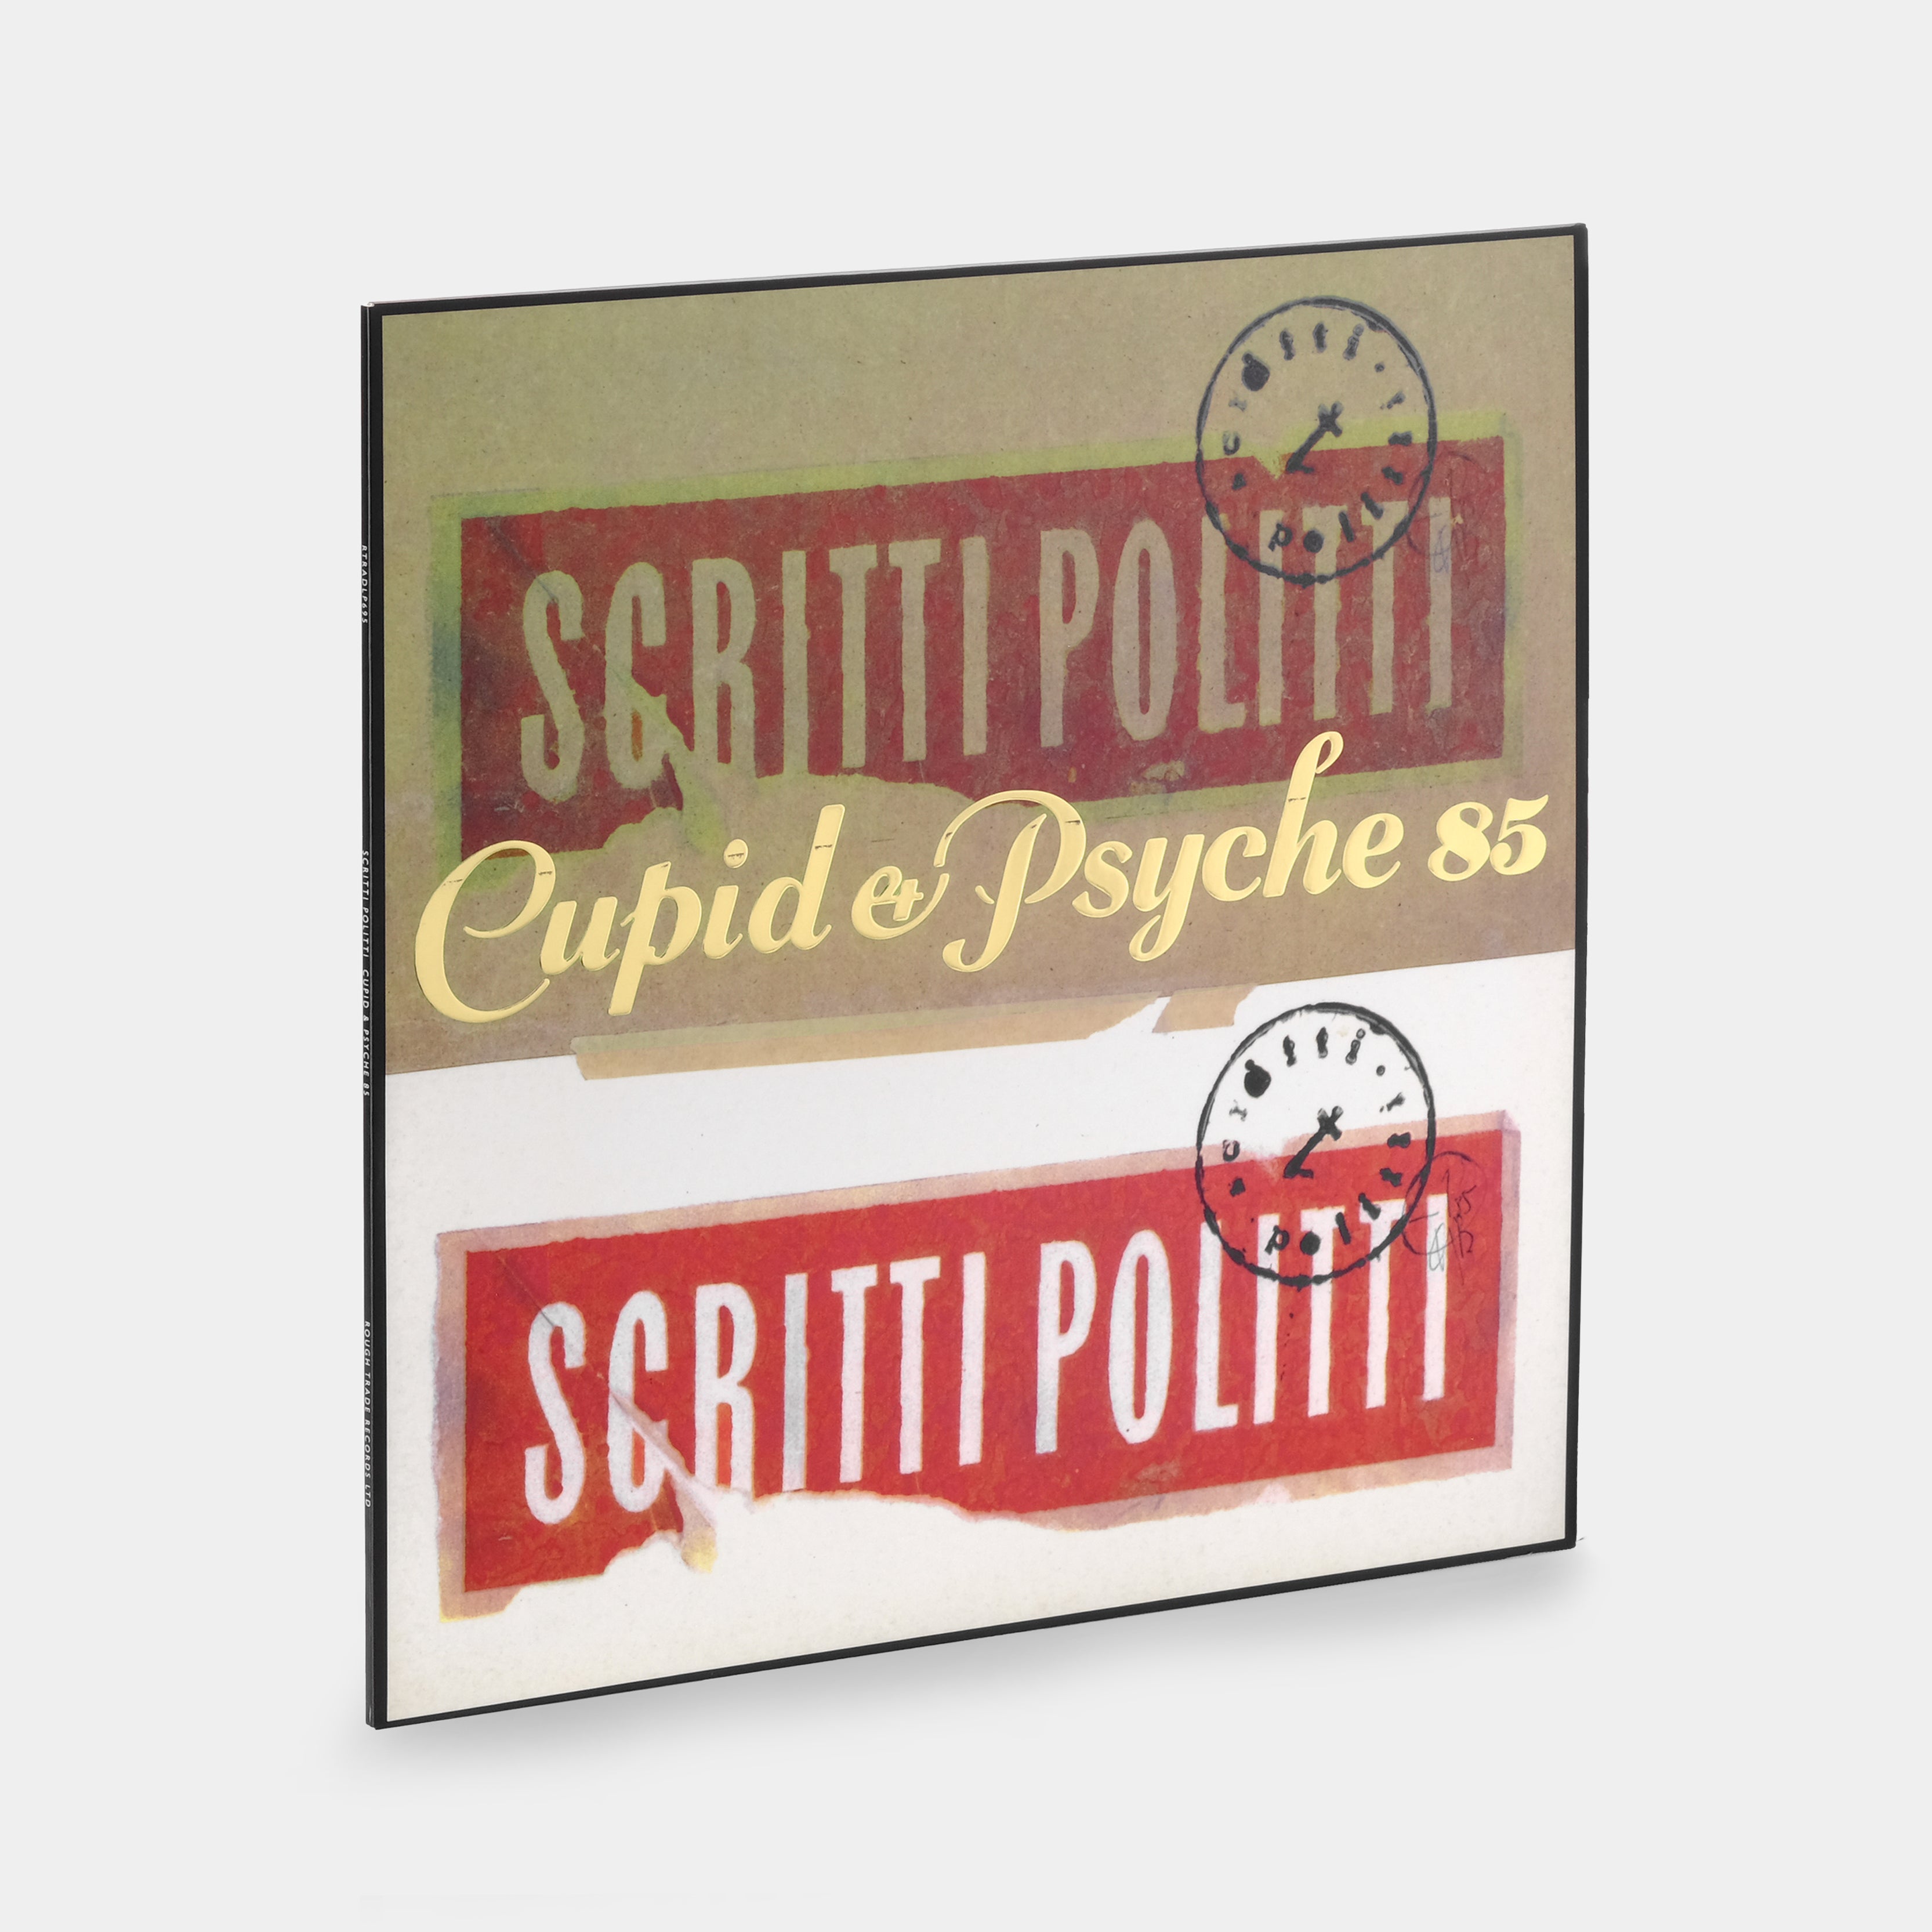 Scritti Politti - Cupid & Psyche 85 LP Vinyl Record